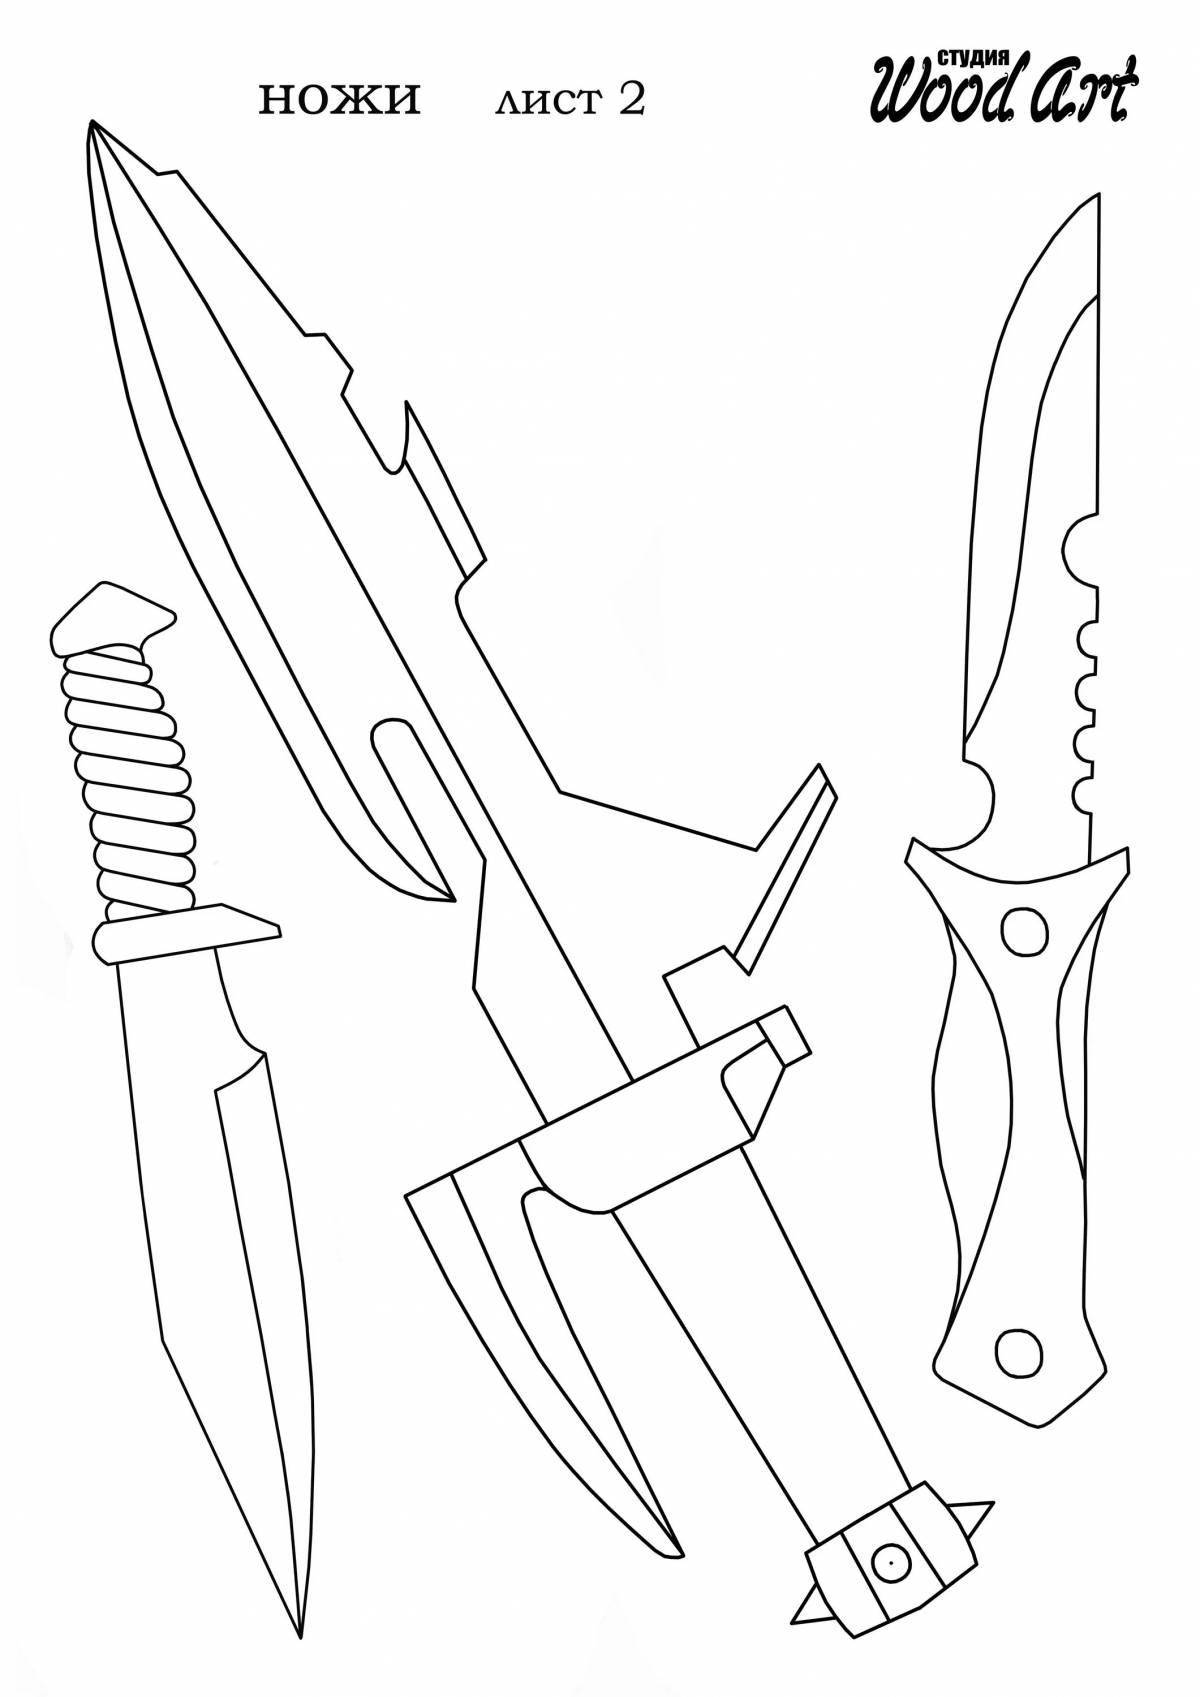 Improved bonder knives standoff 2